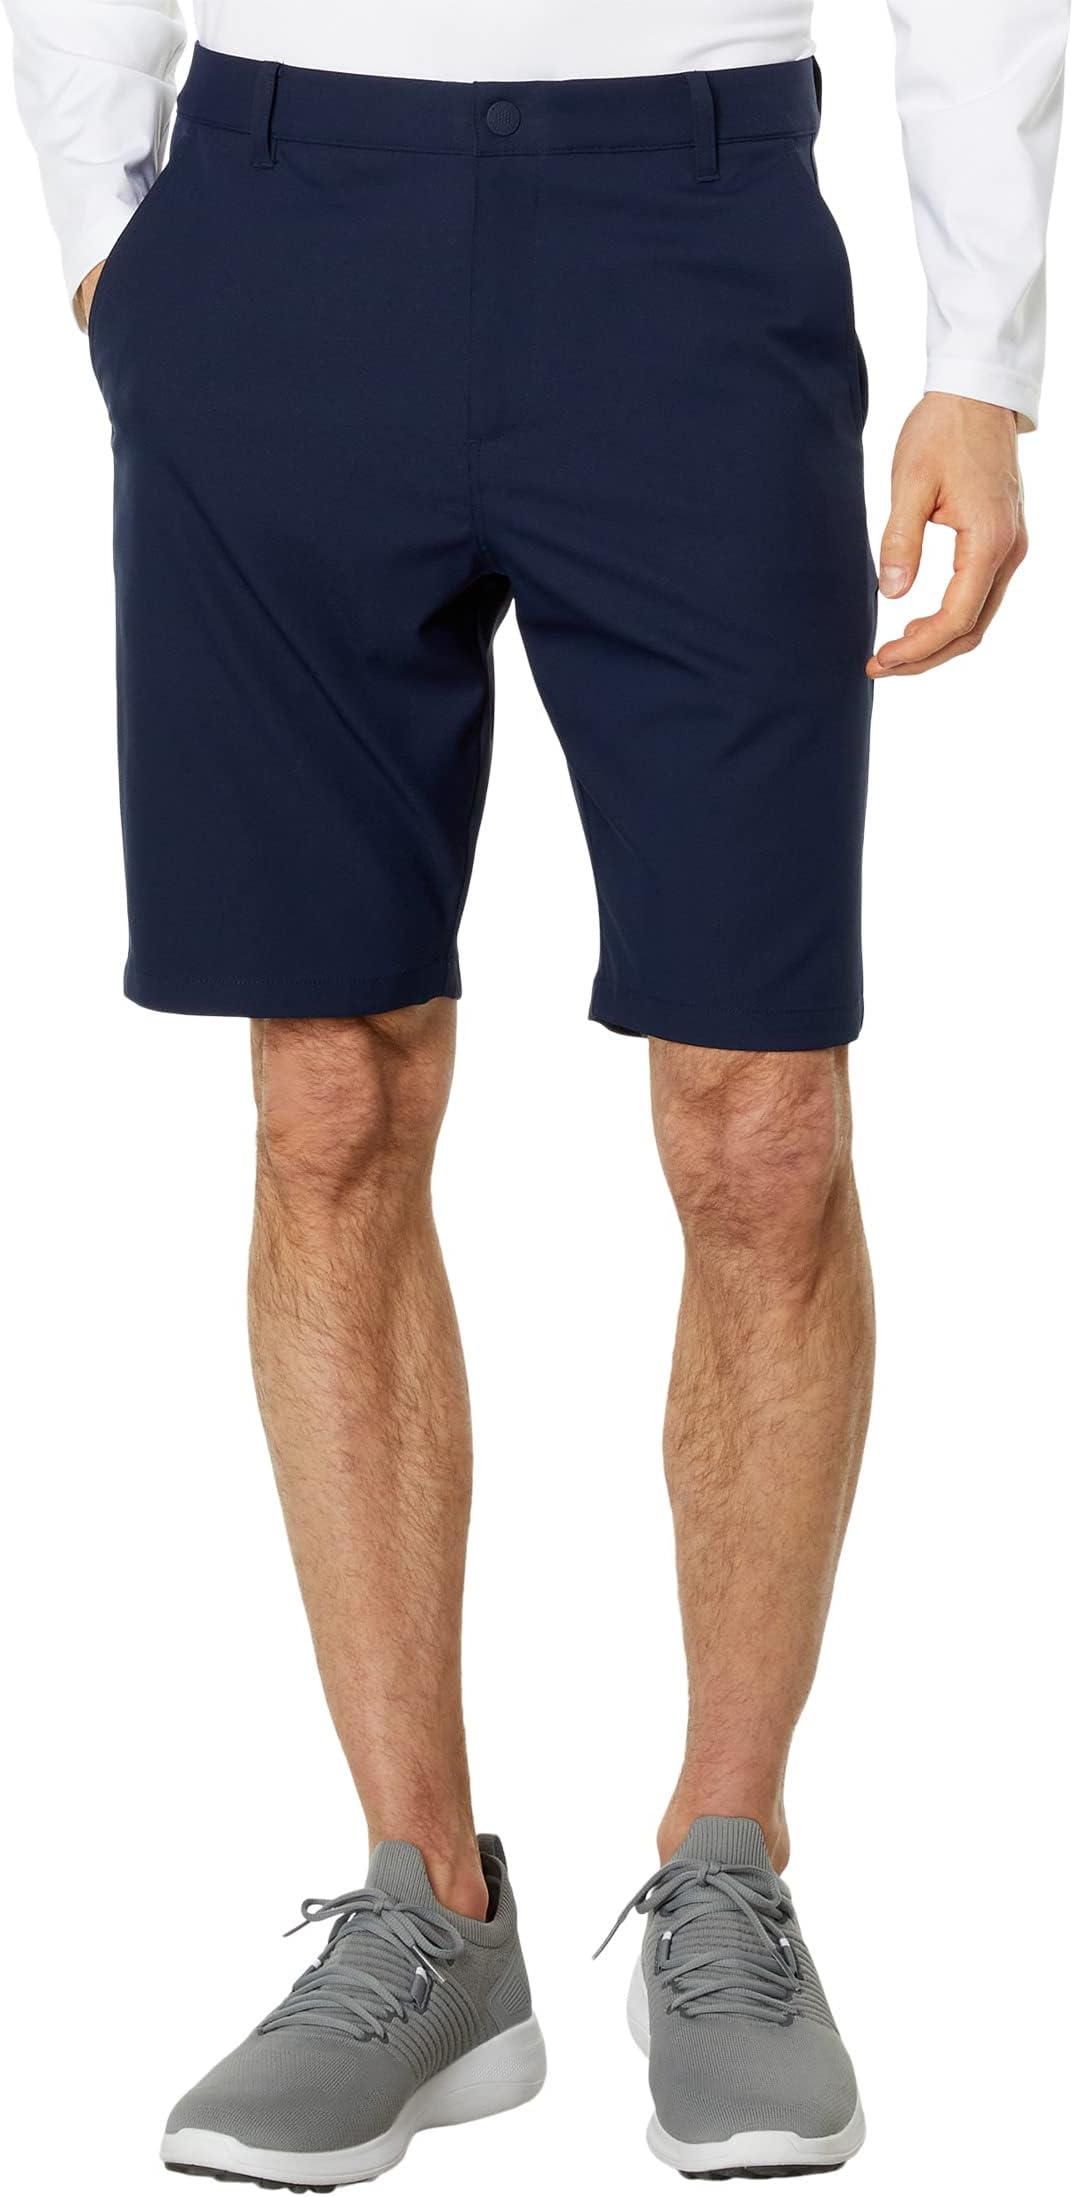 Дилерские шорты 10 дюймов PUMA, цвет Navy Blazer